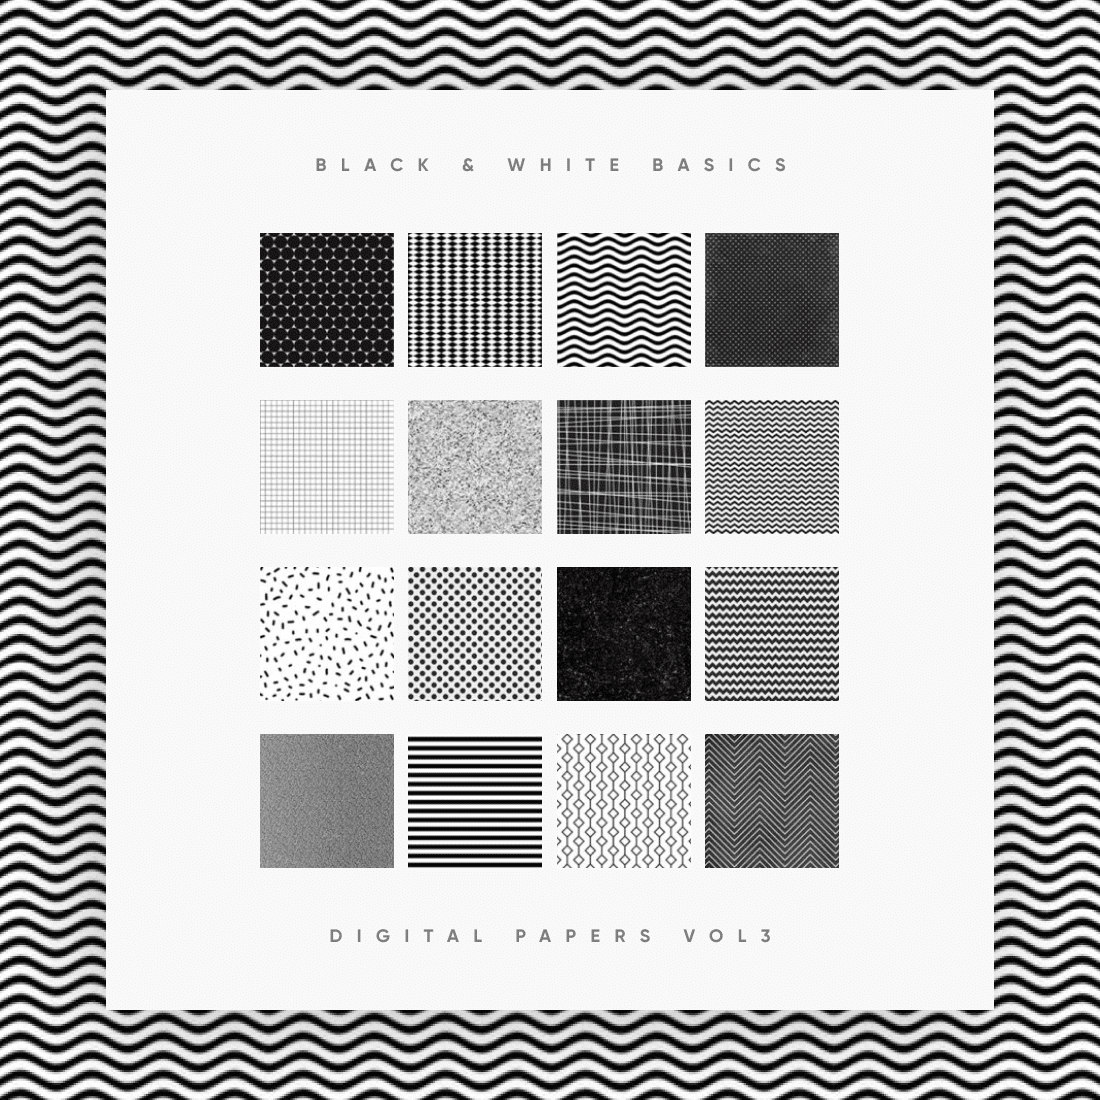 Black & White Basics Digital Paper Pack Vol. 3 cover.